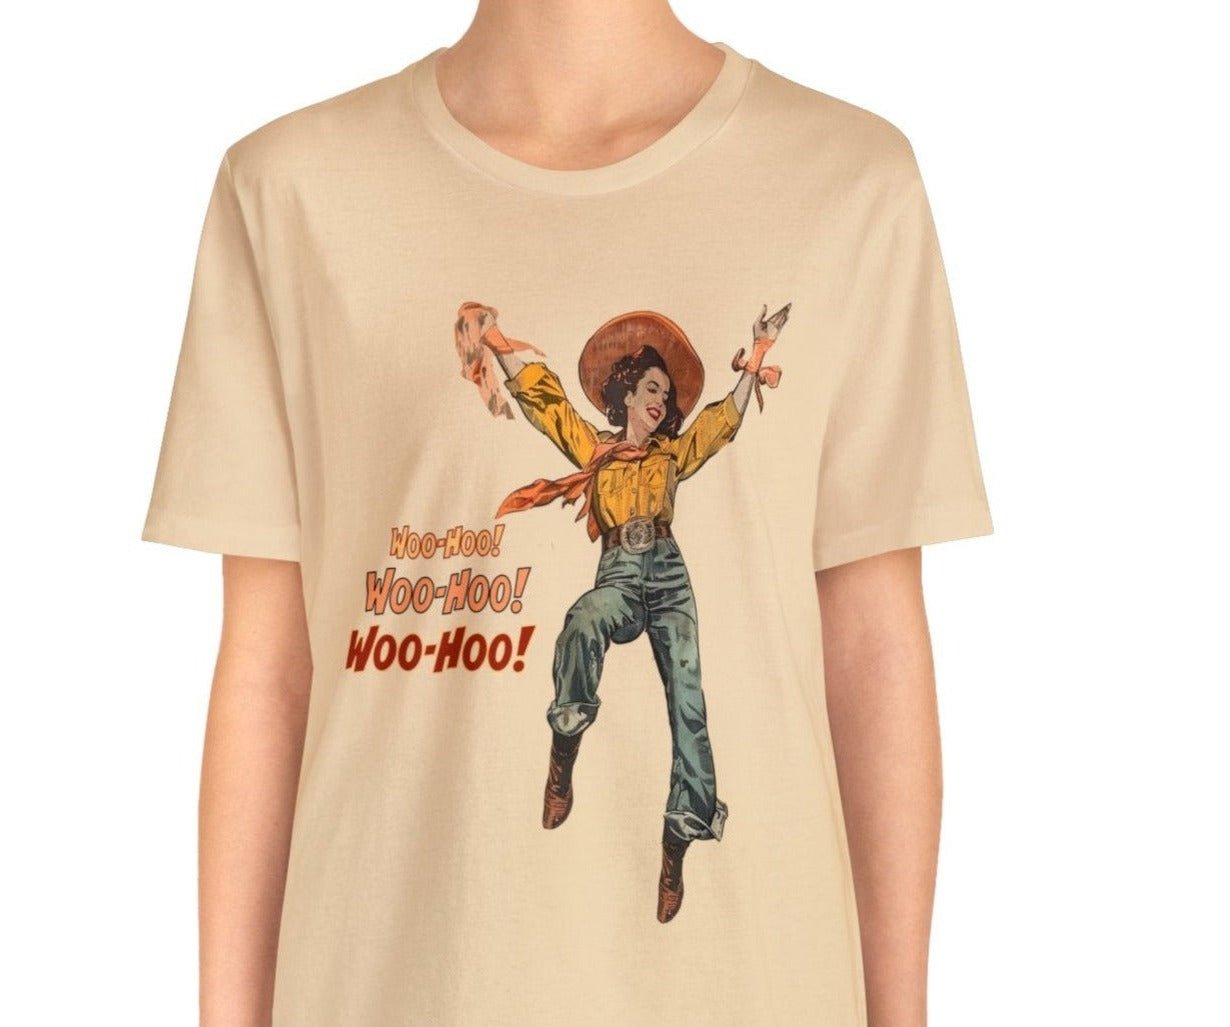 Cowgirl Western T-Shirt, Vintage 50s Graphic Western Shirt, Retro Cowgirl - FlooredByArt